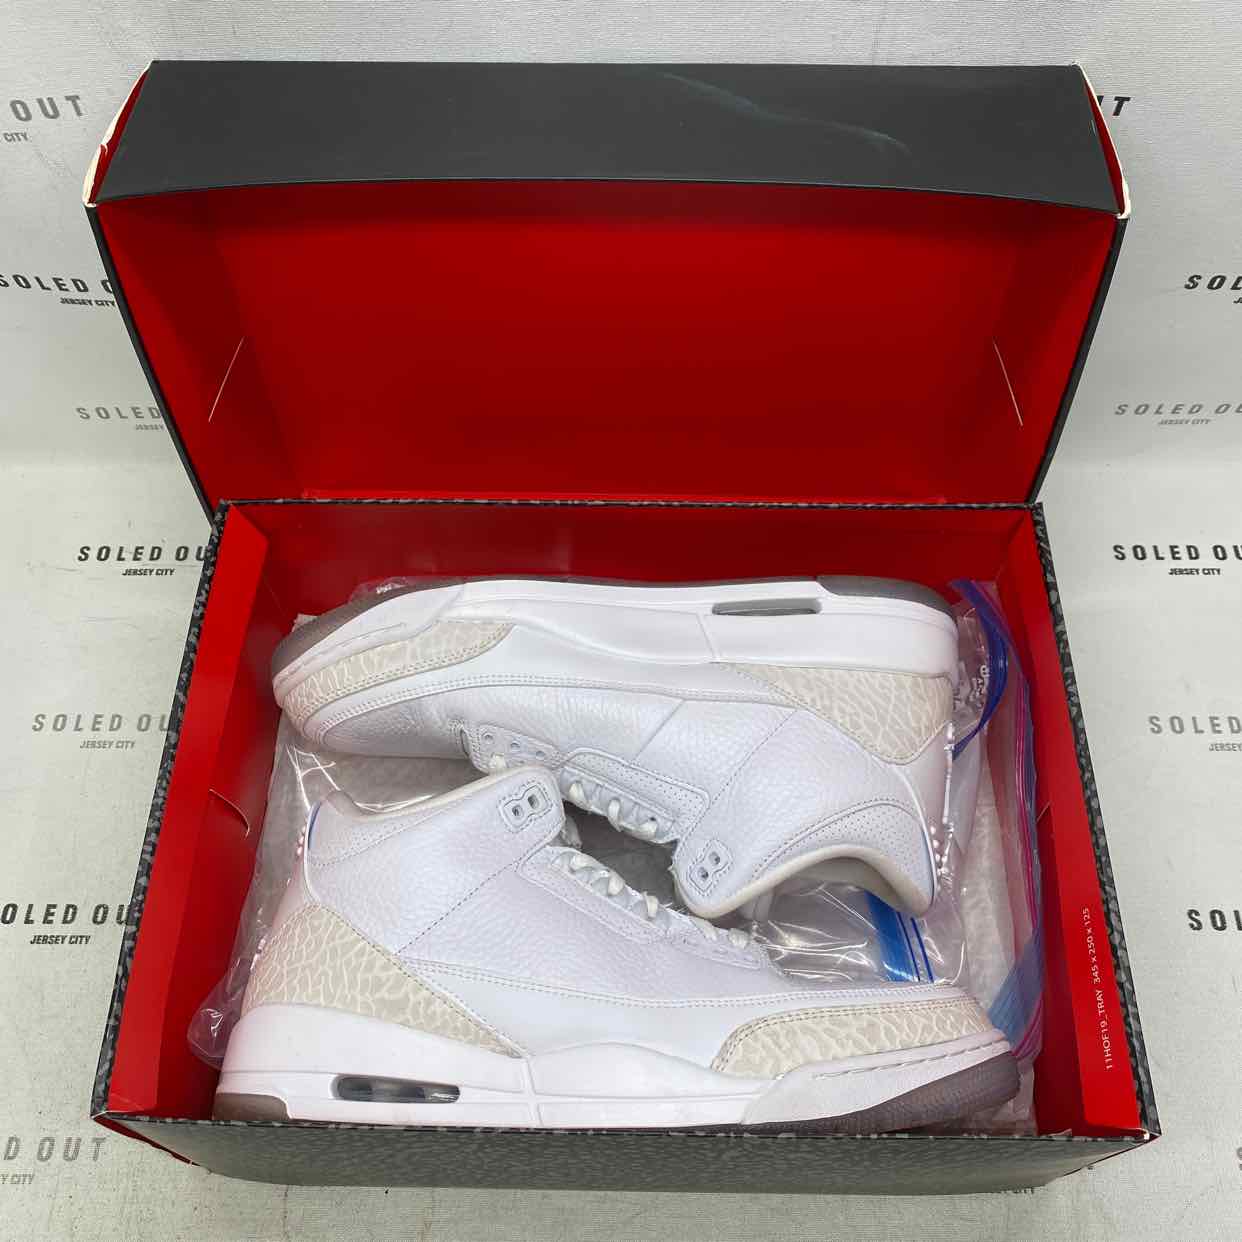 Air Jordan 3 Retro &quot;Pure White&quot; 2018 Used Size 10.5